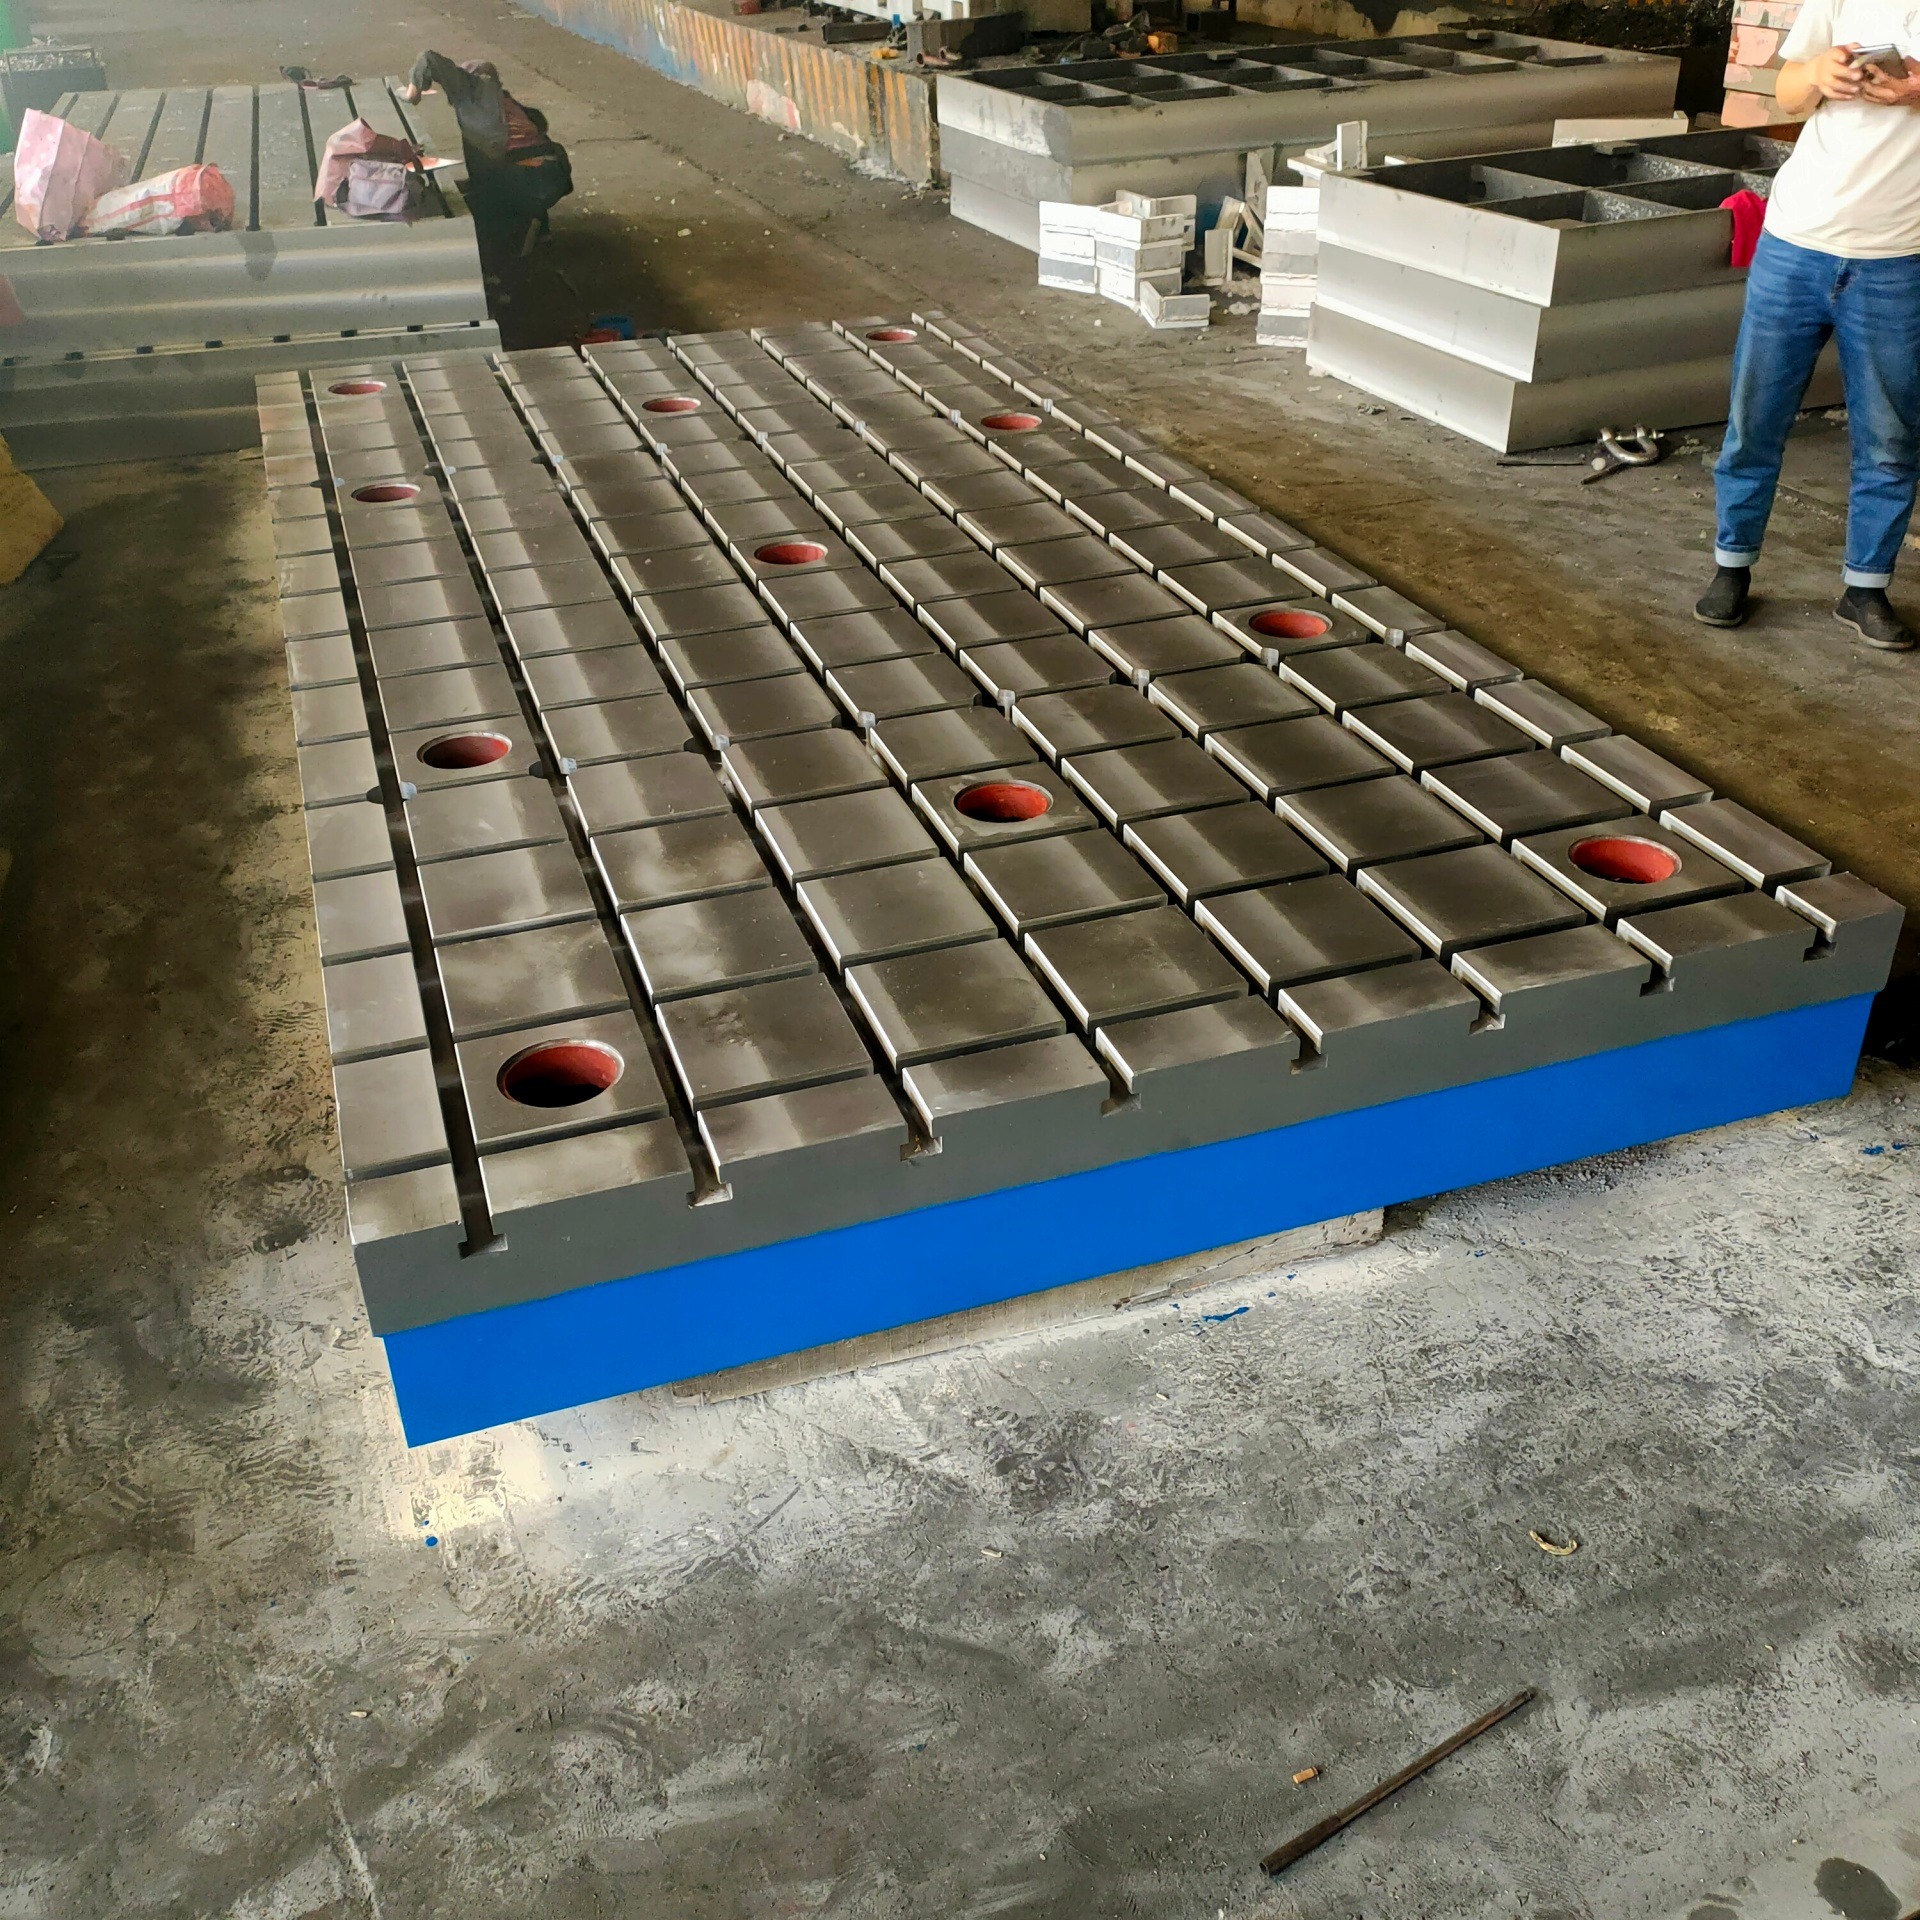 铸铁检验桌 钳工平板 划线测量实验台 T型槽装配焊接工作台